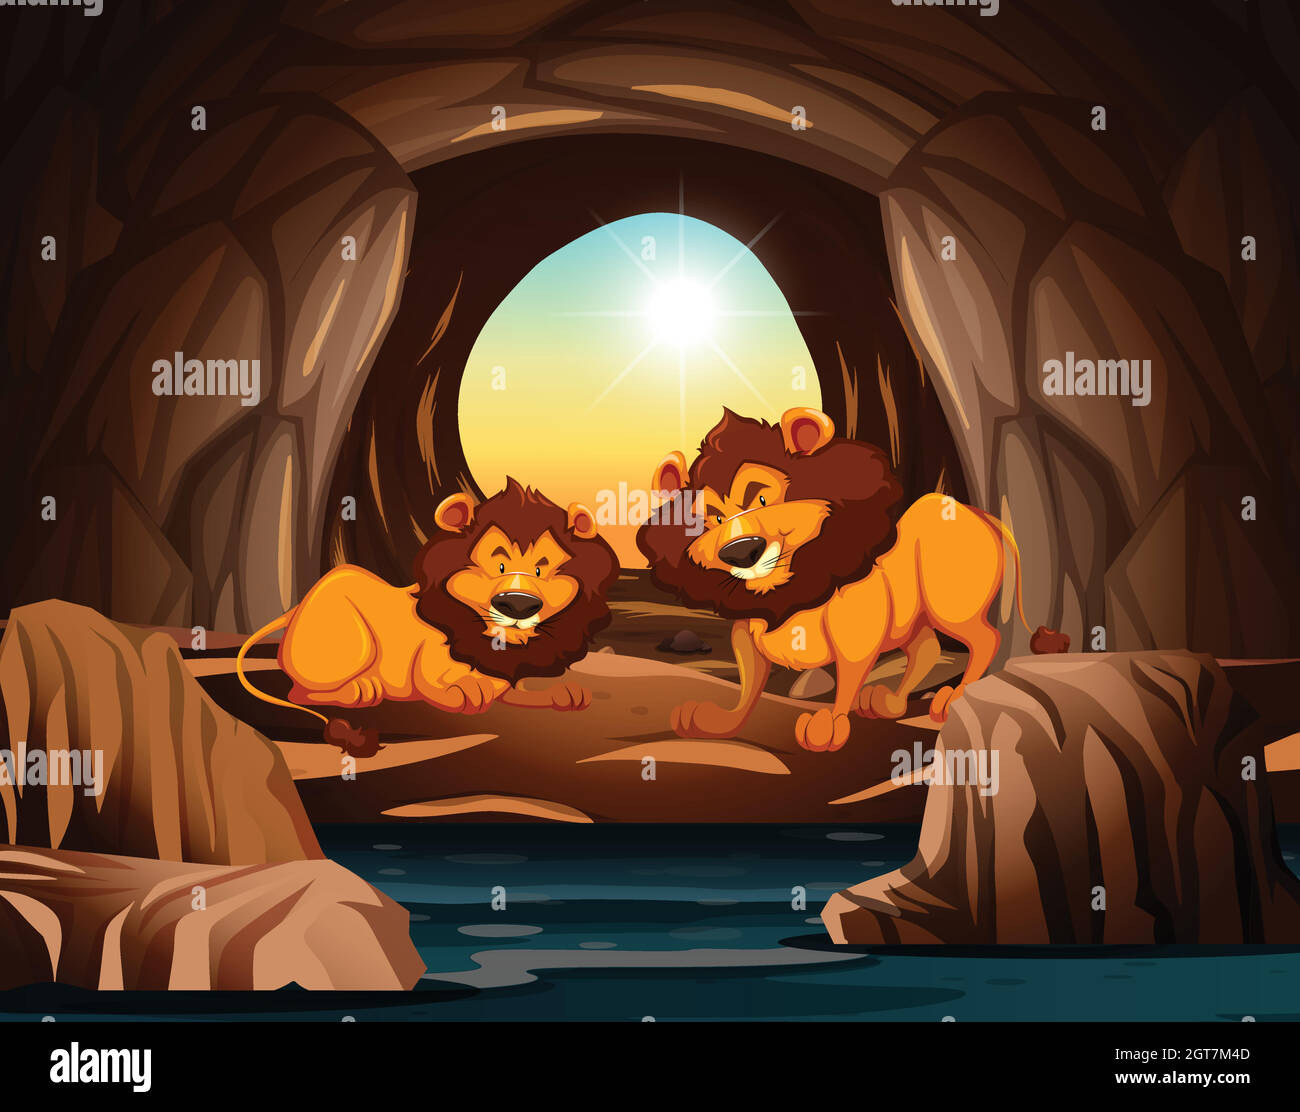 Lion vivant dans la grotte Illustration de Vecteur